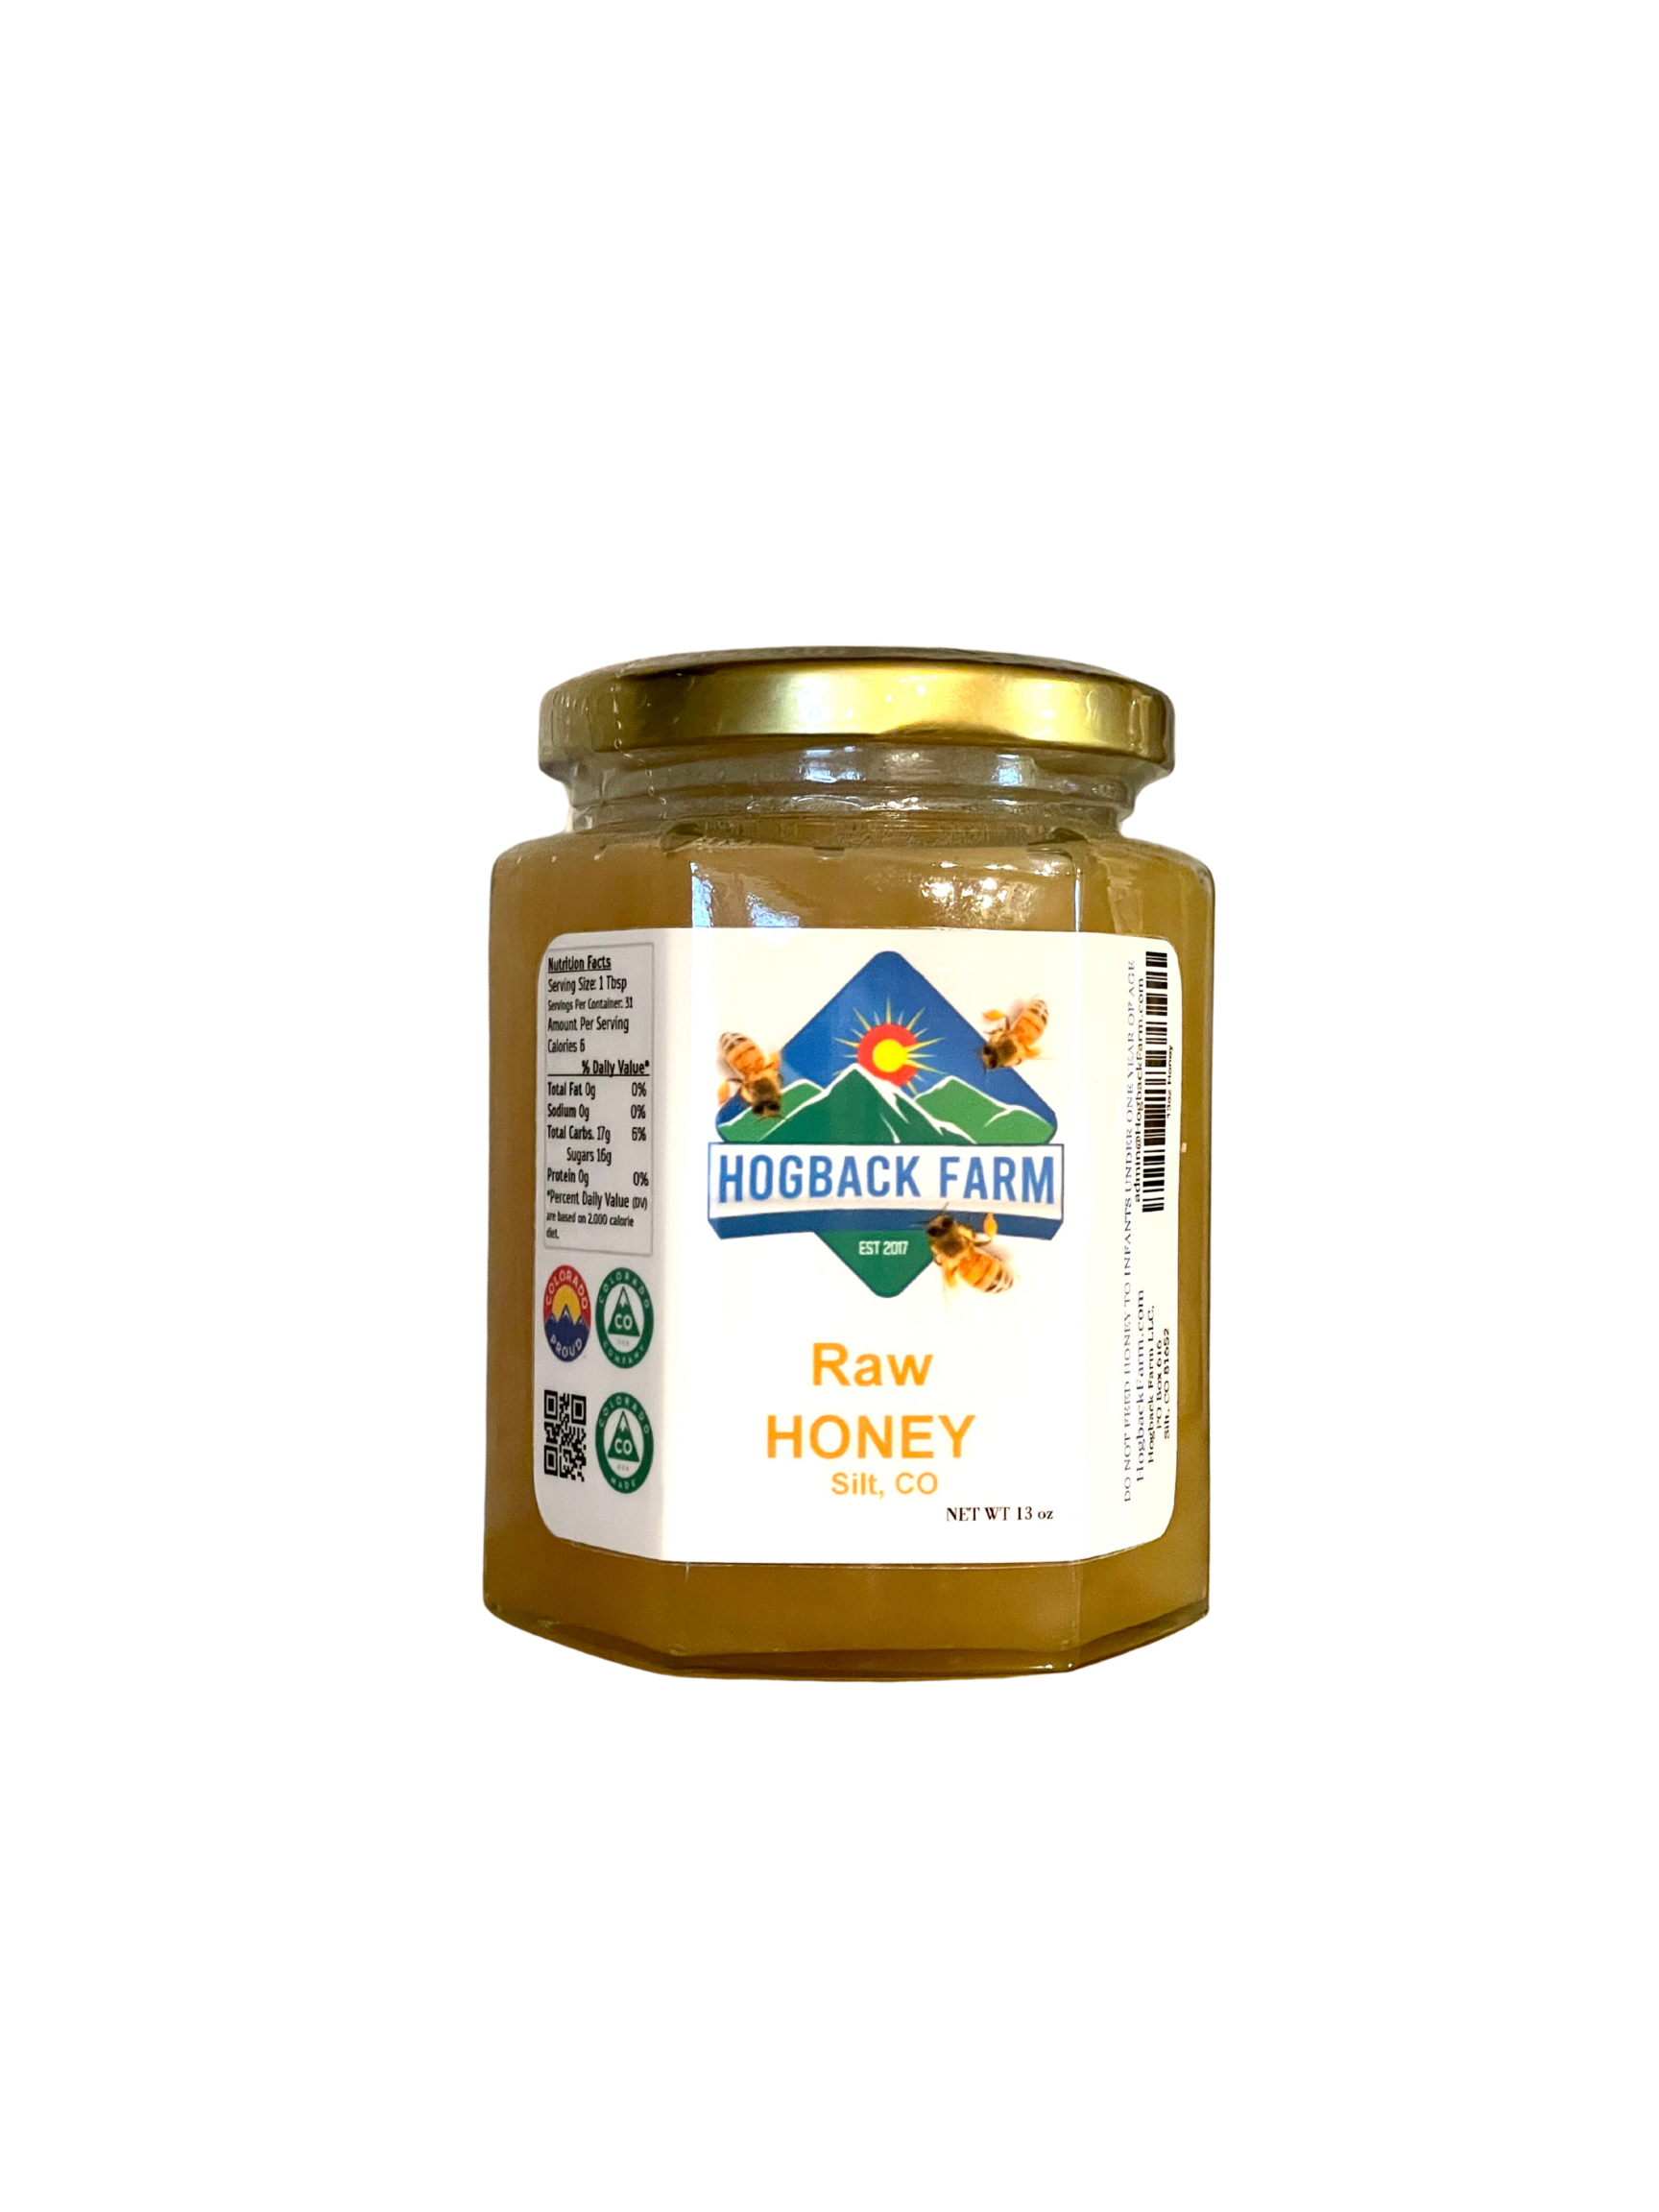 Raw Honey, 13 oz